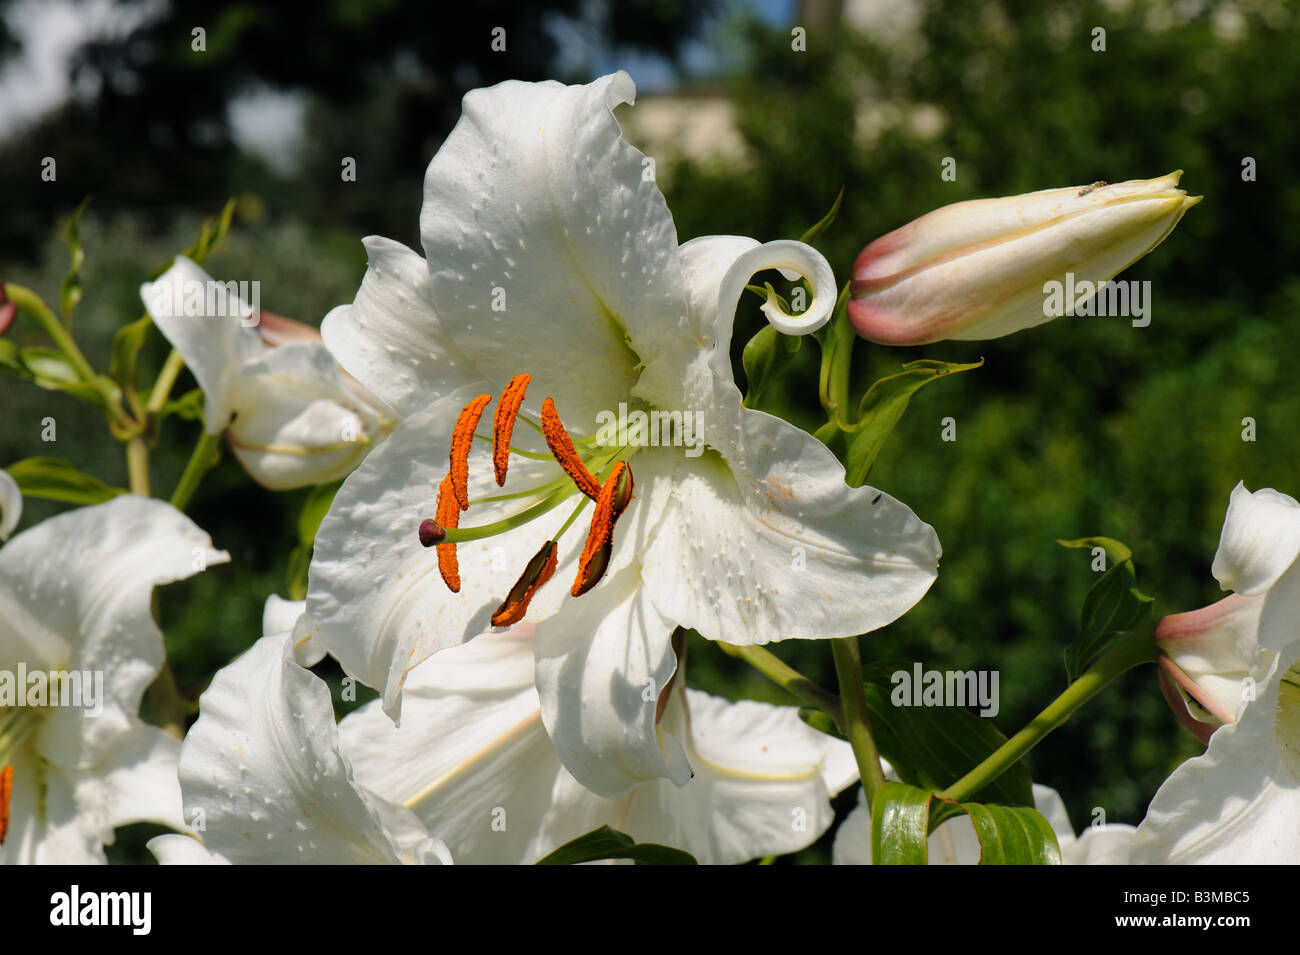 Un capullo de flor y regal lily Lilium regale con orange el polen de las anteras de rodamiento Foto de stock